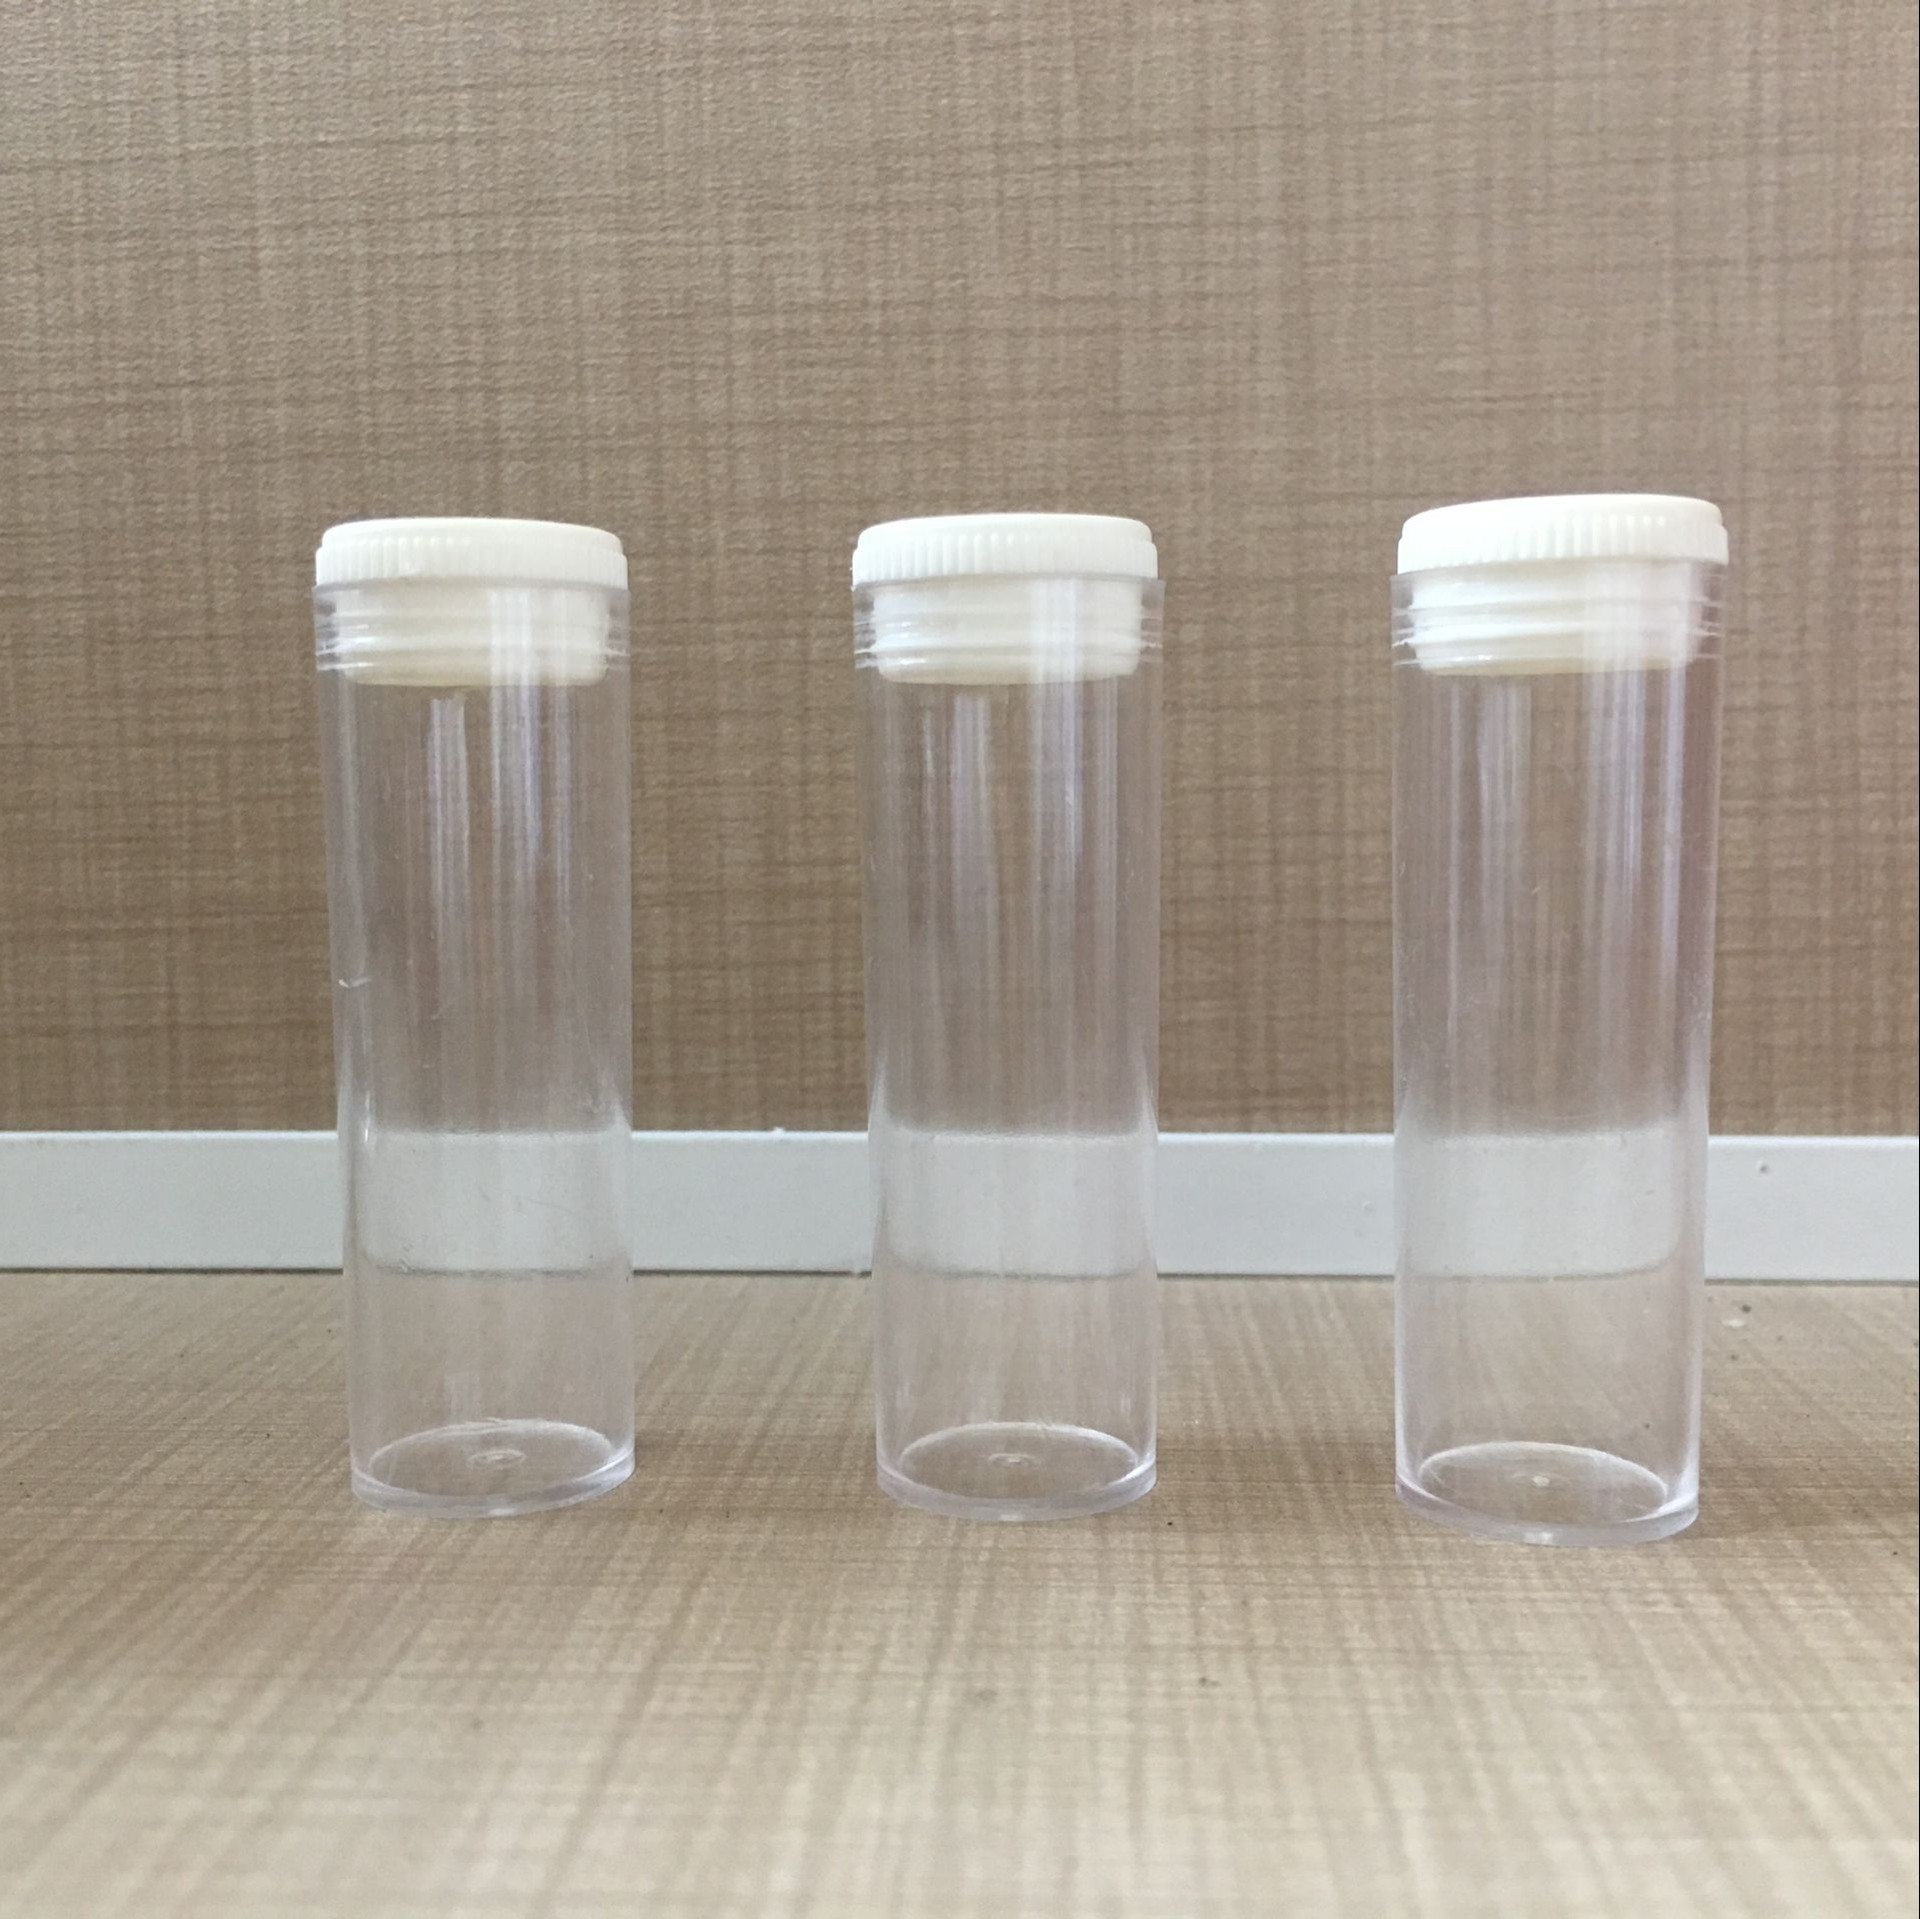 厂家直销2g药管塑料管透明塑料管医用塑料管现货供应示例图5